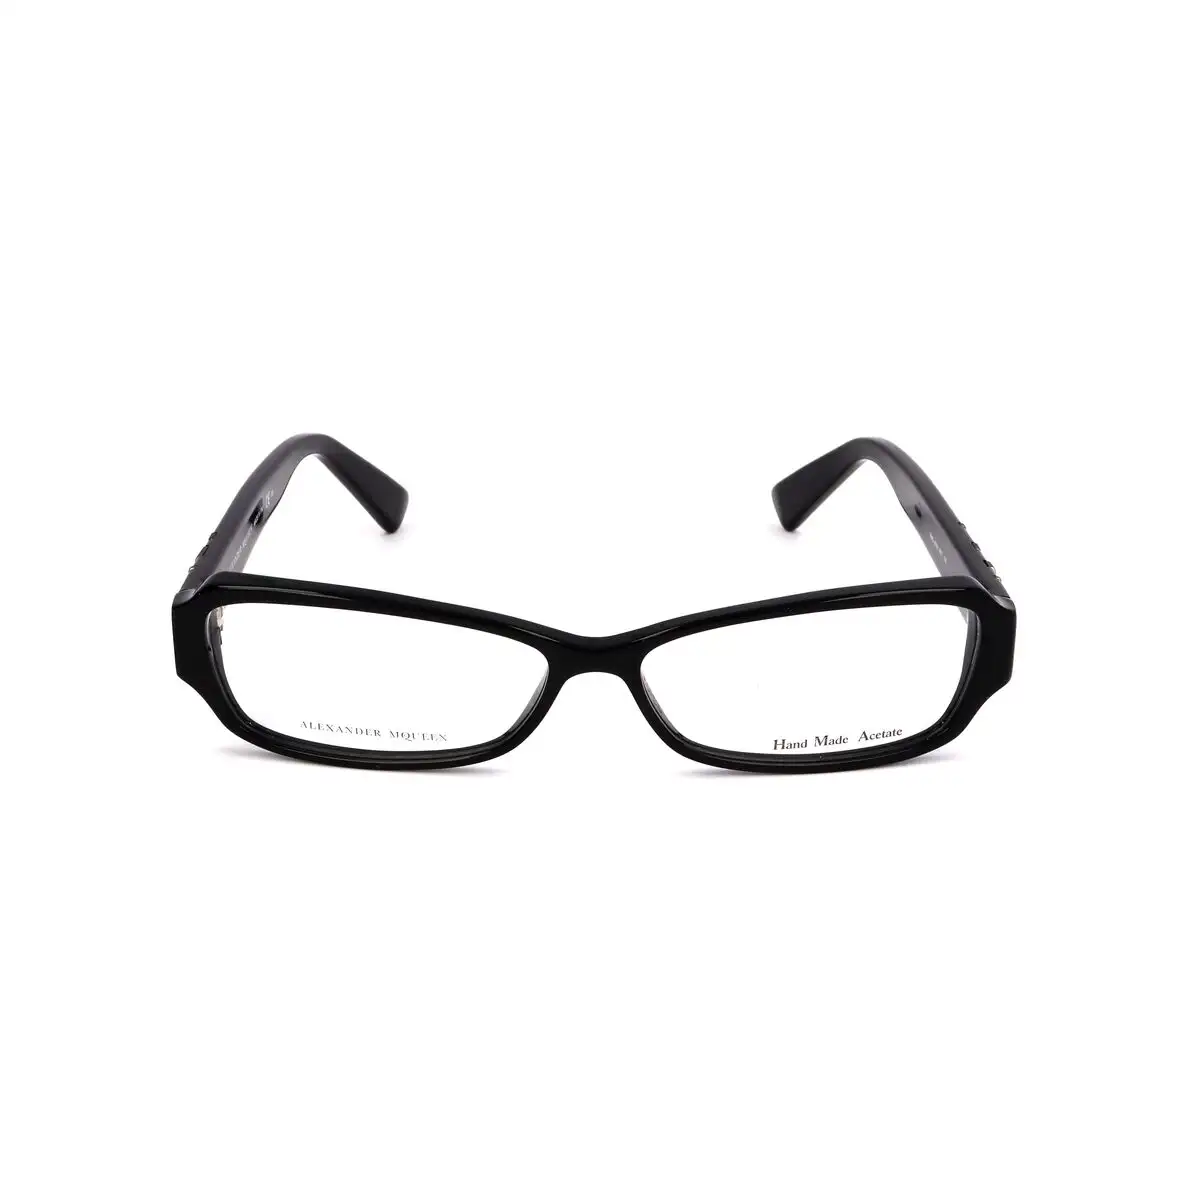 Monture de lunettes femme alexander mcqueen amq 4161 807 noir_1160. DIAYTAR SENEGAL - Où Choisir Devient une Découverte. Explorez notre boutique en ligne et trouvez des articles qui vous surprennent et vous ravissent à chaque clic.